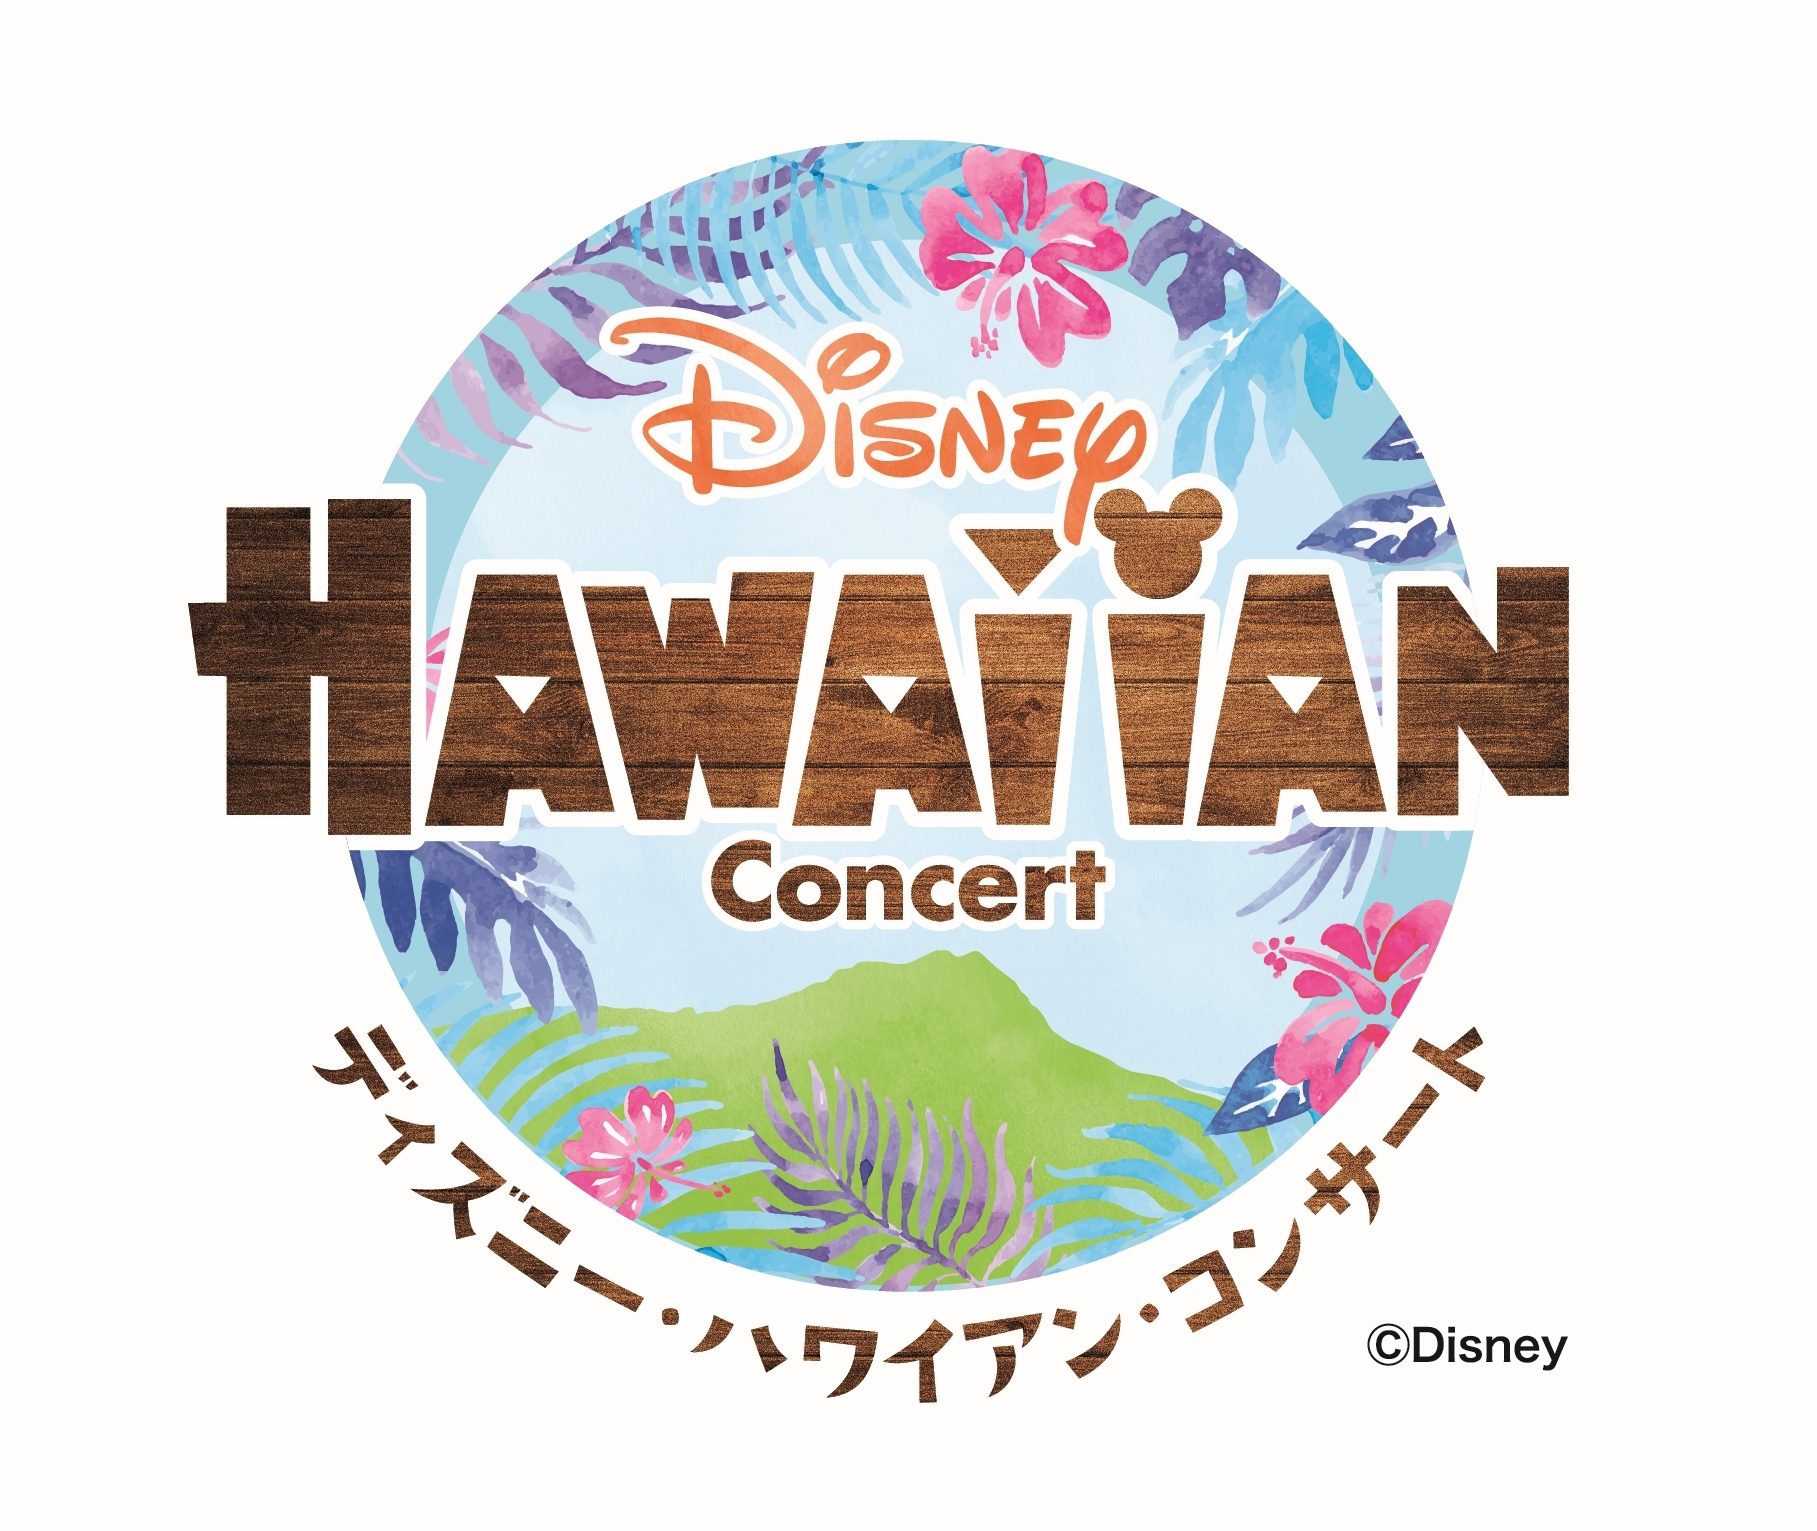 ディズニー ハワイアン コンサート17 が5月より開催 ディズニー音楽とハワイ文化を堪能する世界初のイベント Spice エンタメ特化型情報メディア スパイス